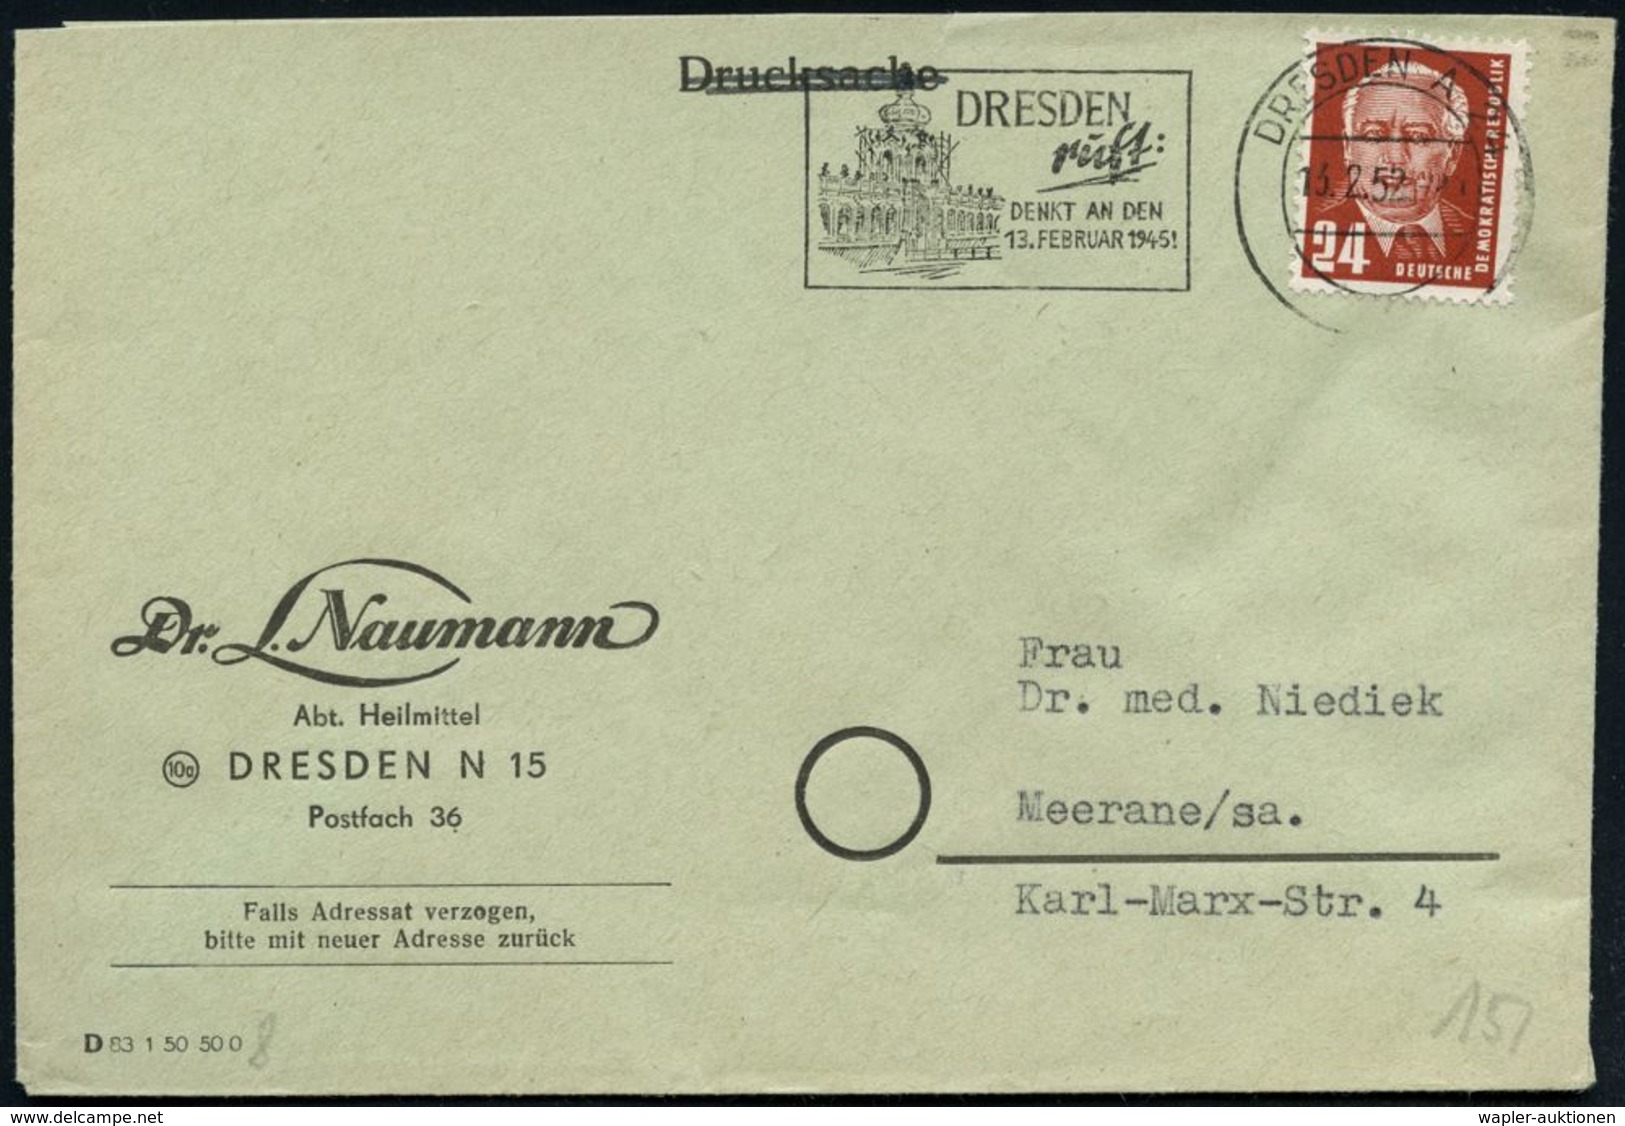 DRESDEN A24/ I/ Dresden/ Ruft:/ DENKT AN DEN/ 13.FEBRUAR 1945 1953 (13.2.) MWSt = Zwinger, Zerstört Im Febr. 1945  = Eri - Guerre Mondiale (Seconde)